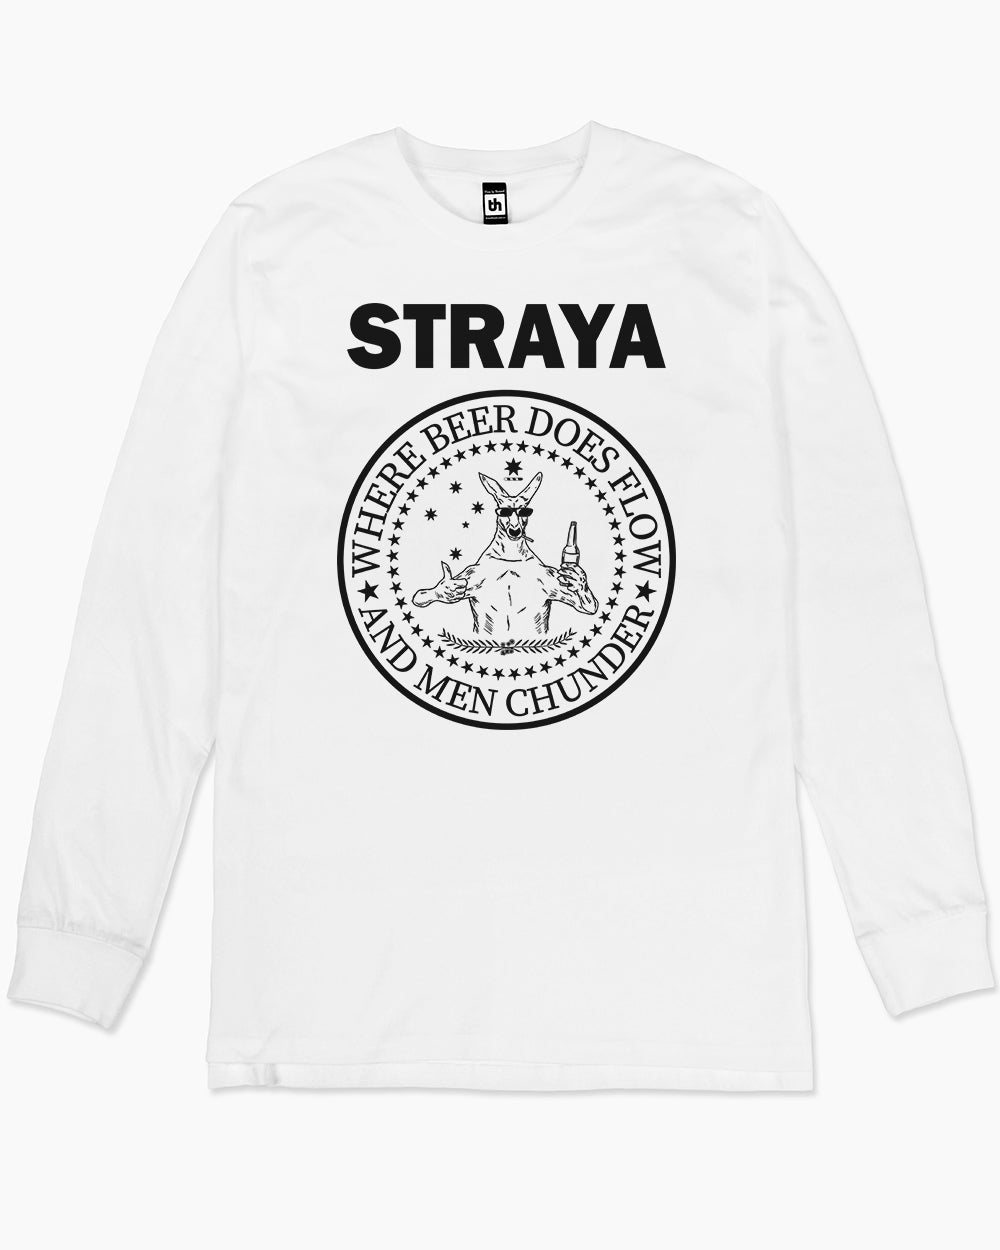 Straya - Where Beer Does Flow & Men Chunder Long Sleeve Australia Online #colour_white